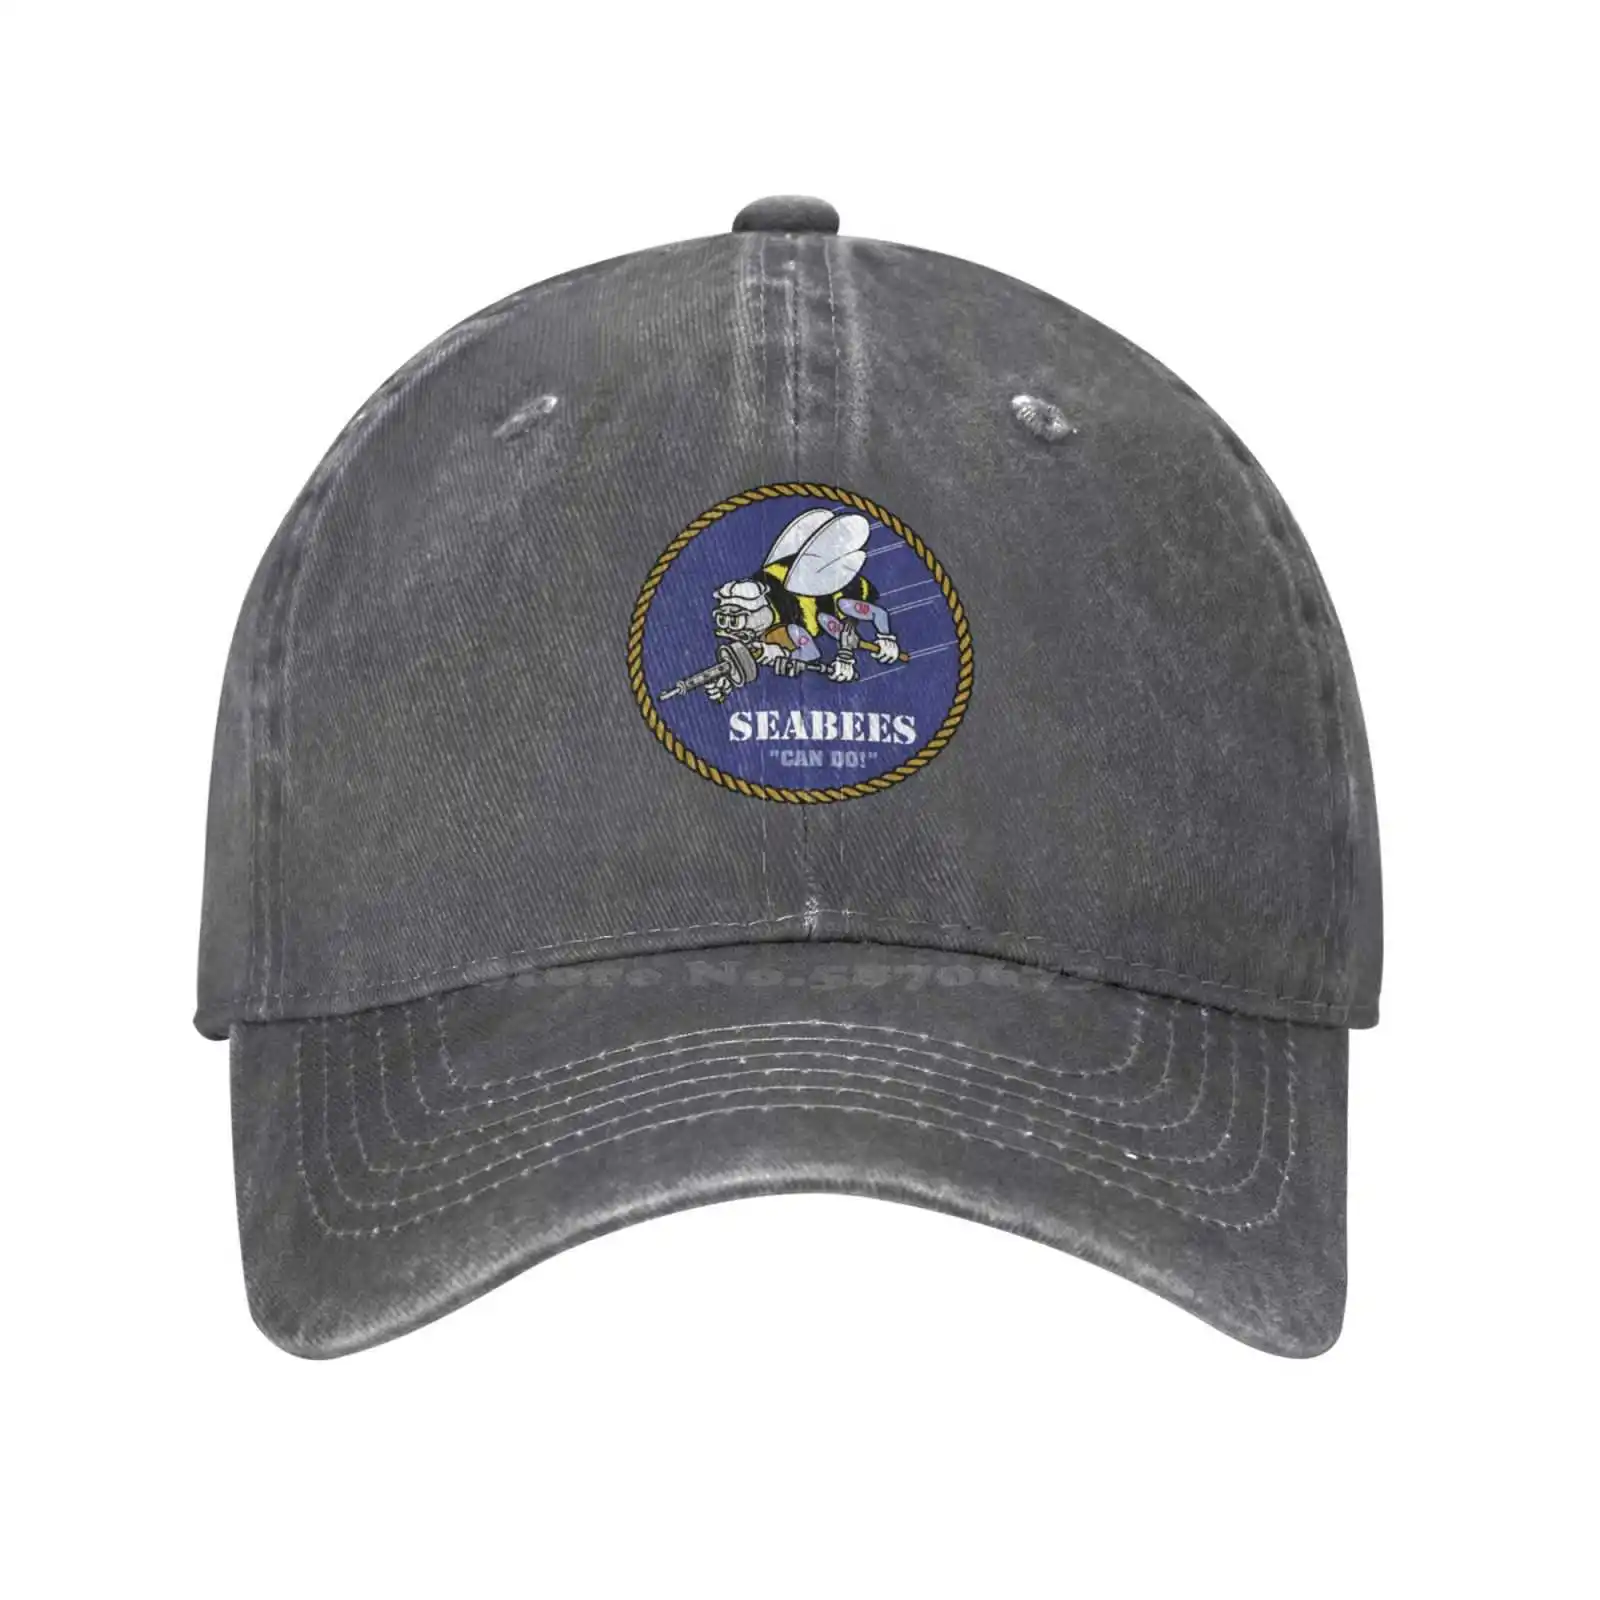 Графическая кепка с логотипом Seabees, высококачественная джинсовая кепка, вязаная шапка, бейсболка . ' - ' . 2